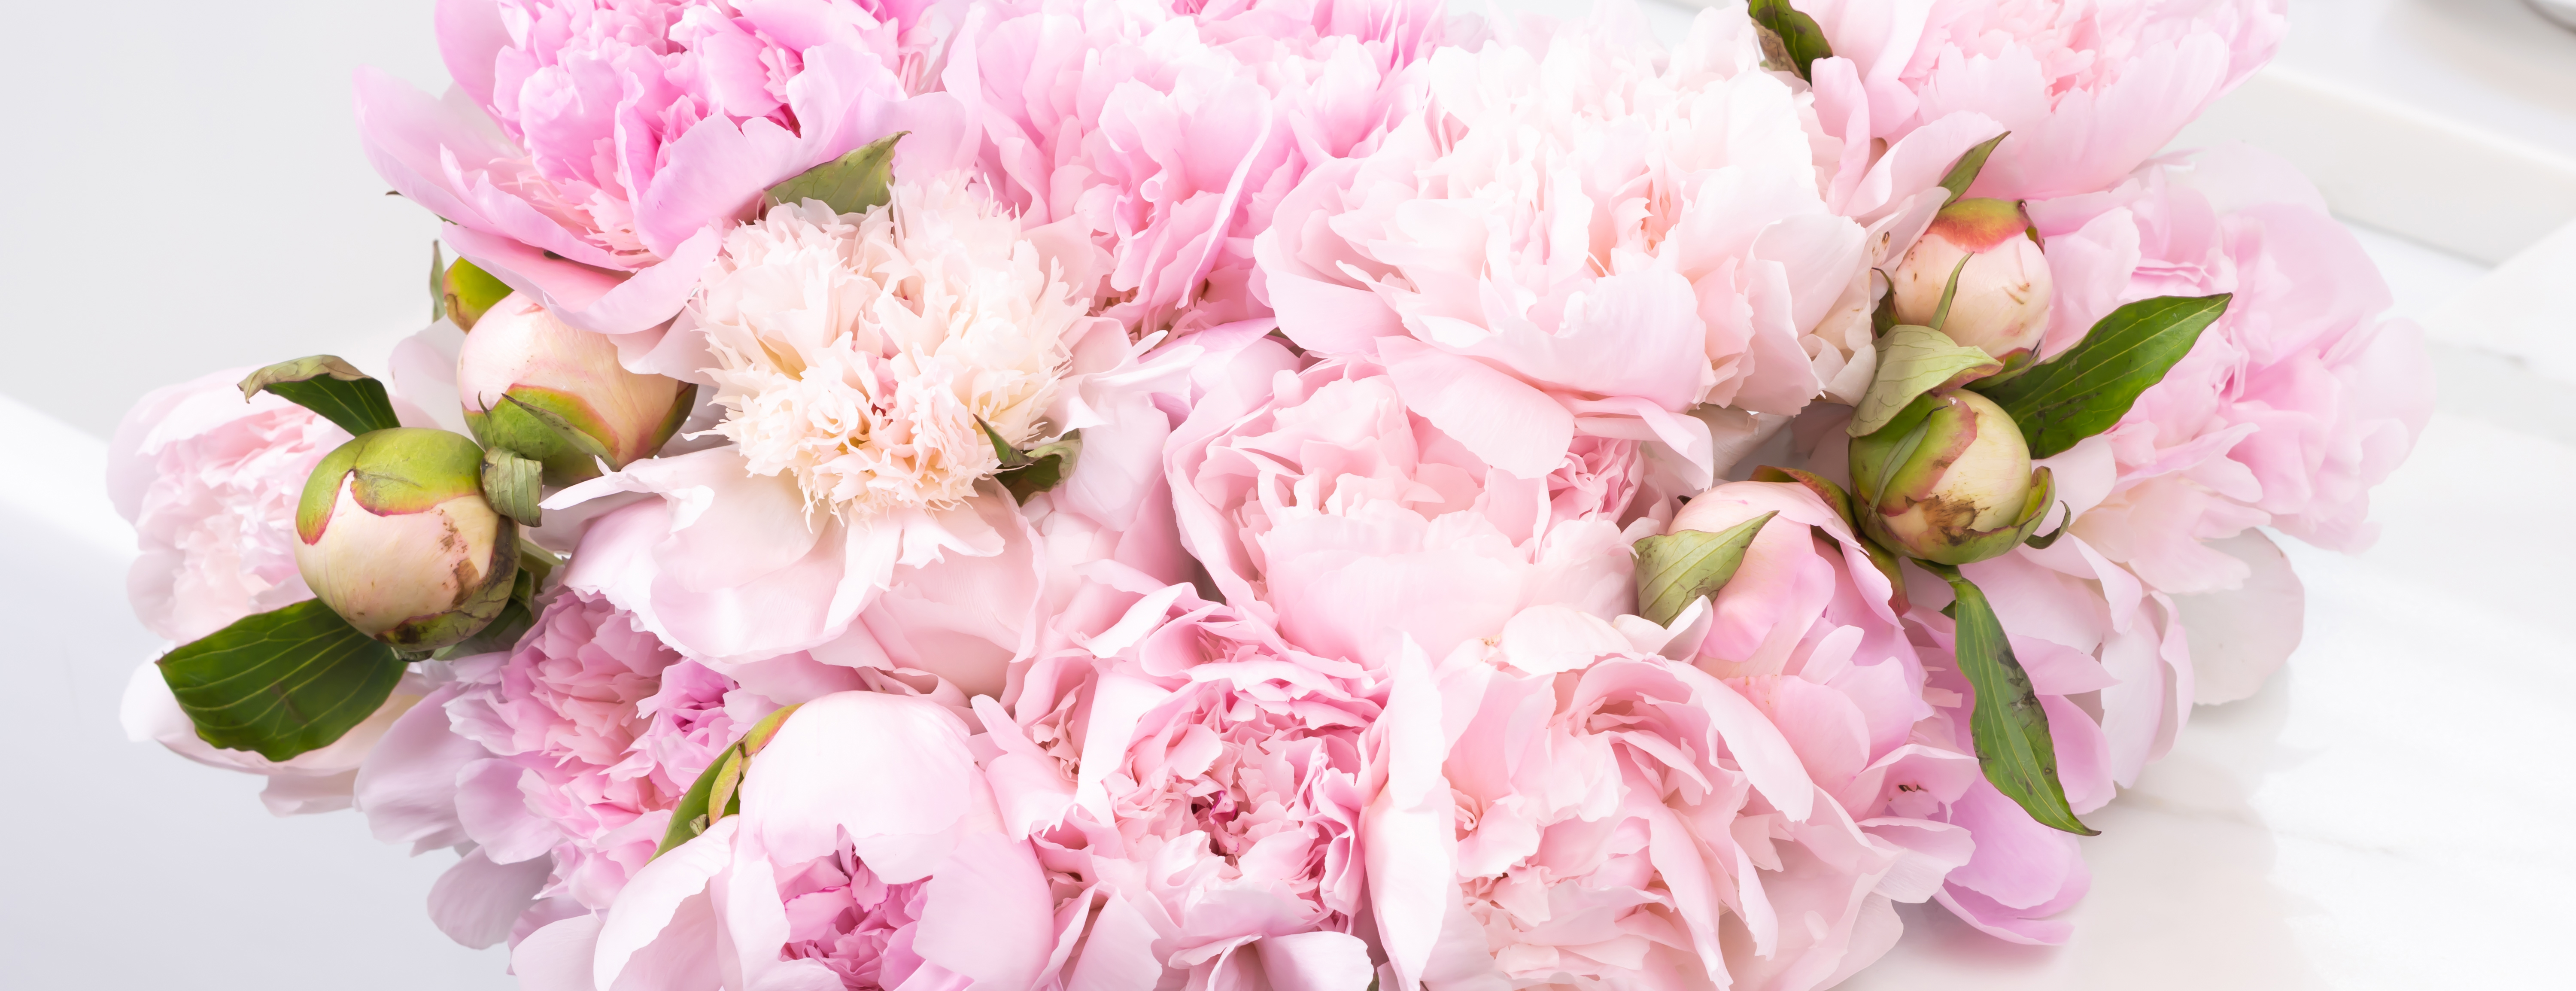 Close up of a light pink flower arrangement